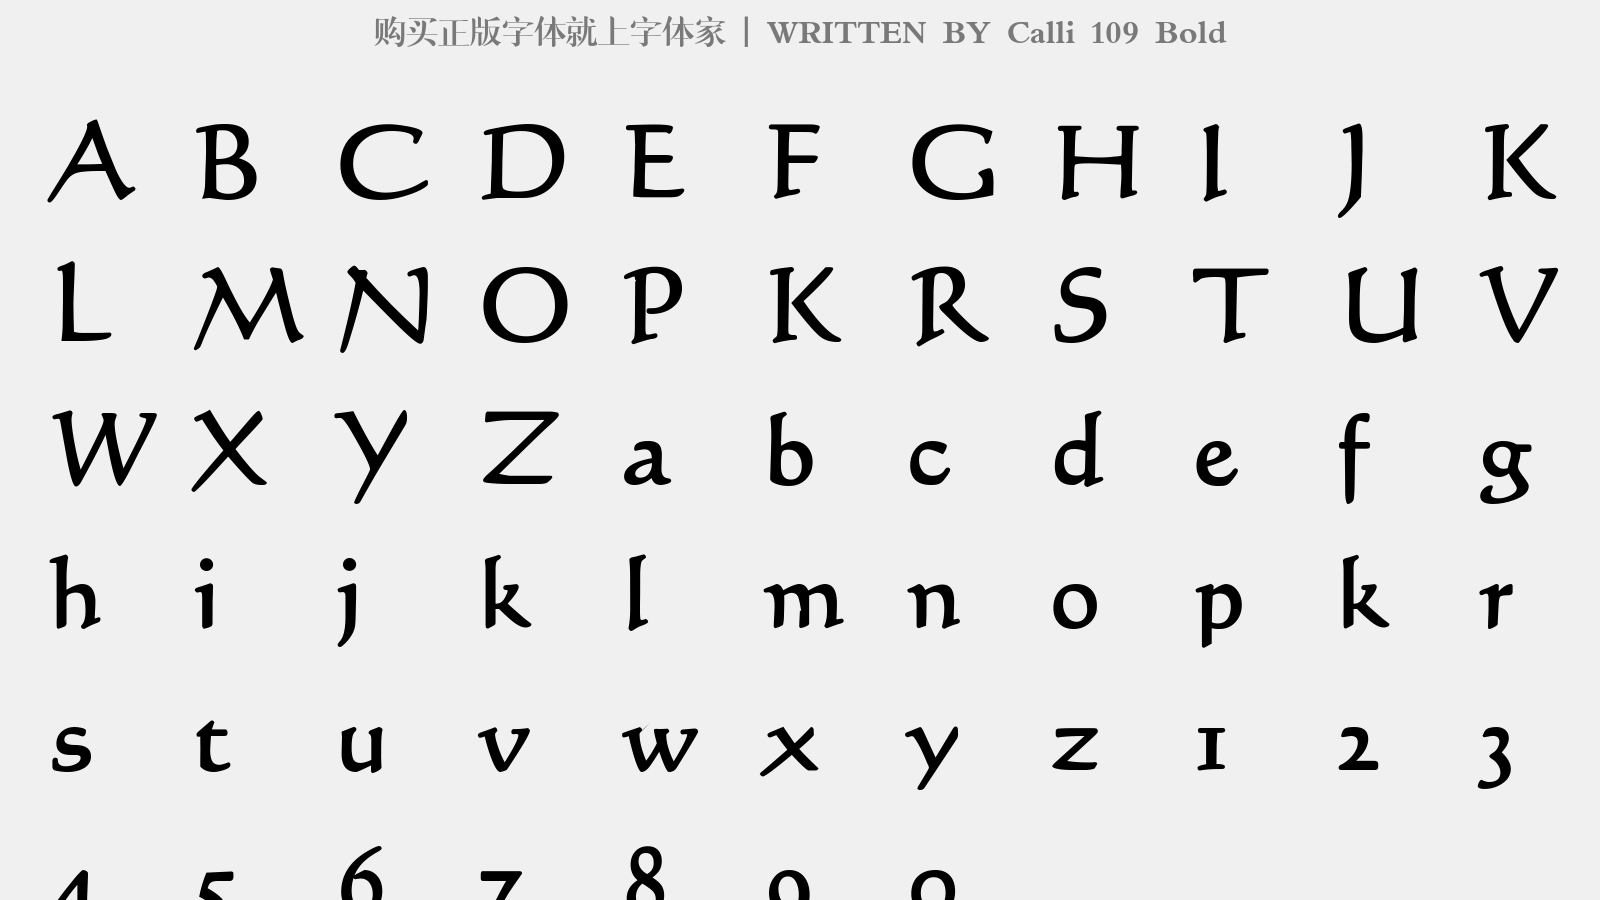 calli 109 bold - 大写字母/小写字母/数字